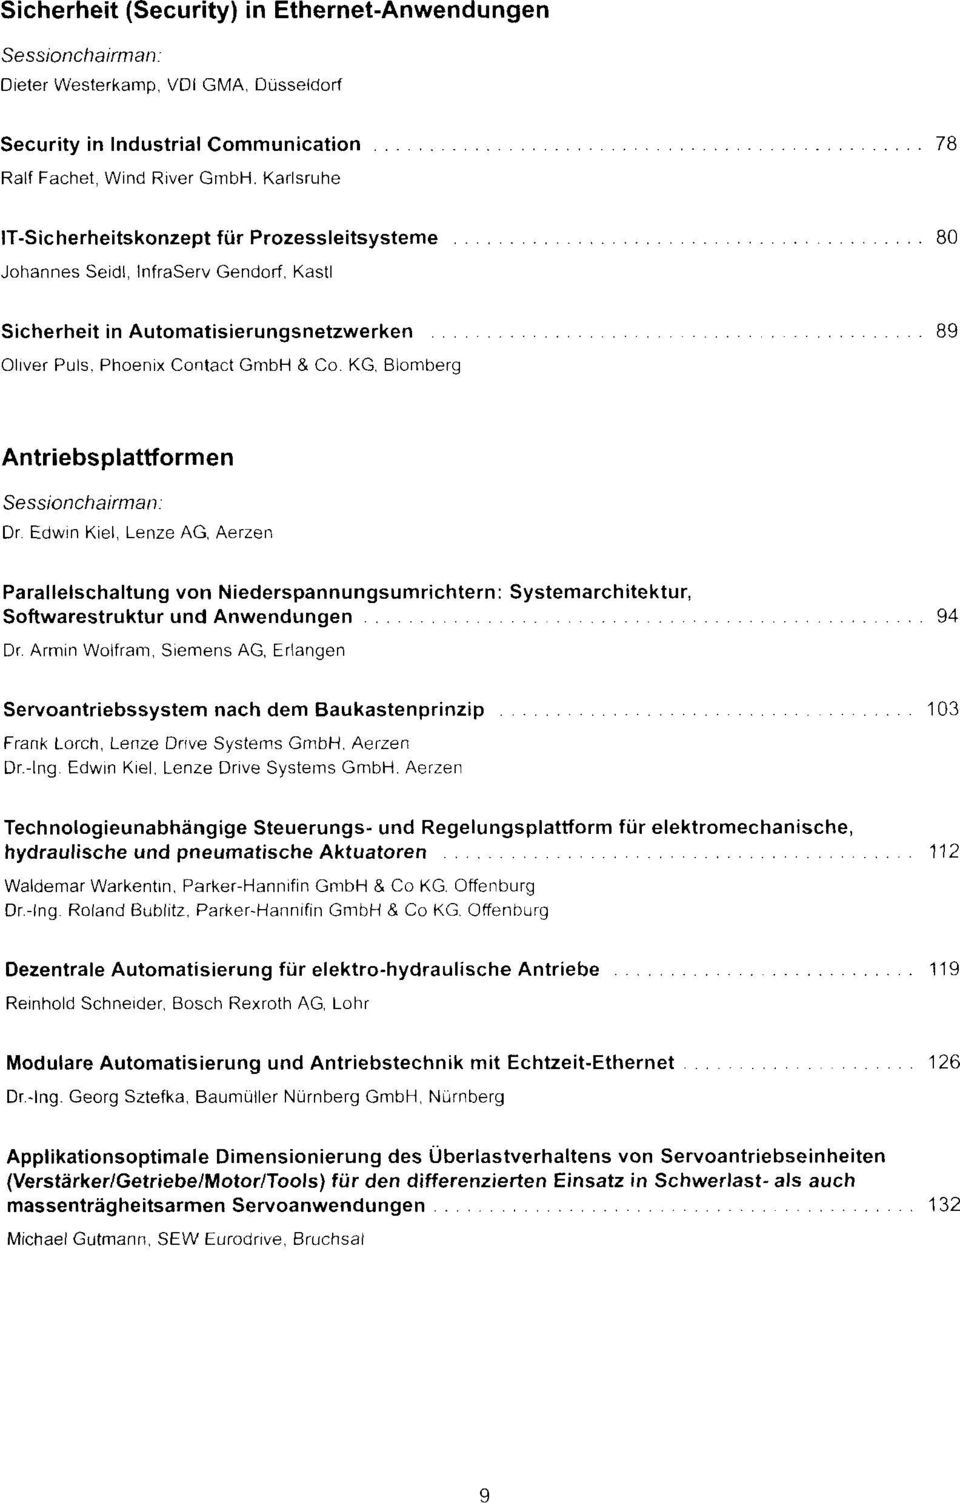 KG, Blomberg Antriebsplattformen Dr. Edwin Kiel, Lenze AG, Aerzen Parallelschaltung von Niederspannungsumrichtern: Systemarchitektur, Softwarestruktur und Anwendungen 94 Dr.